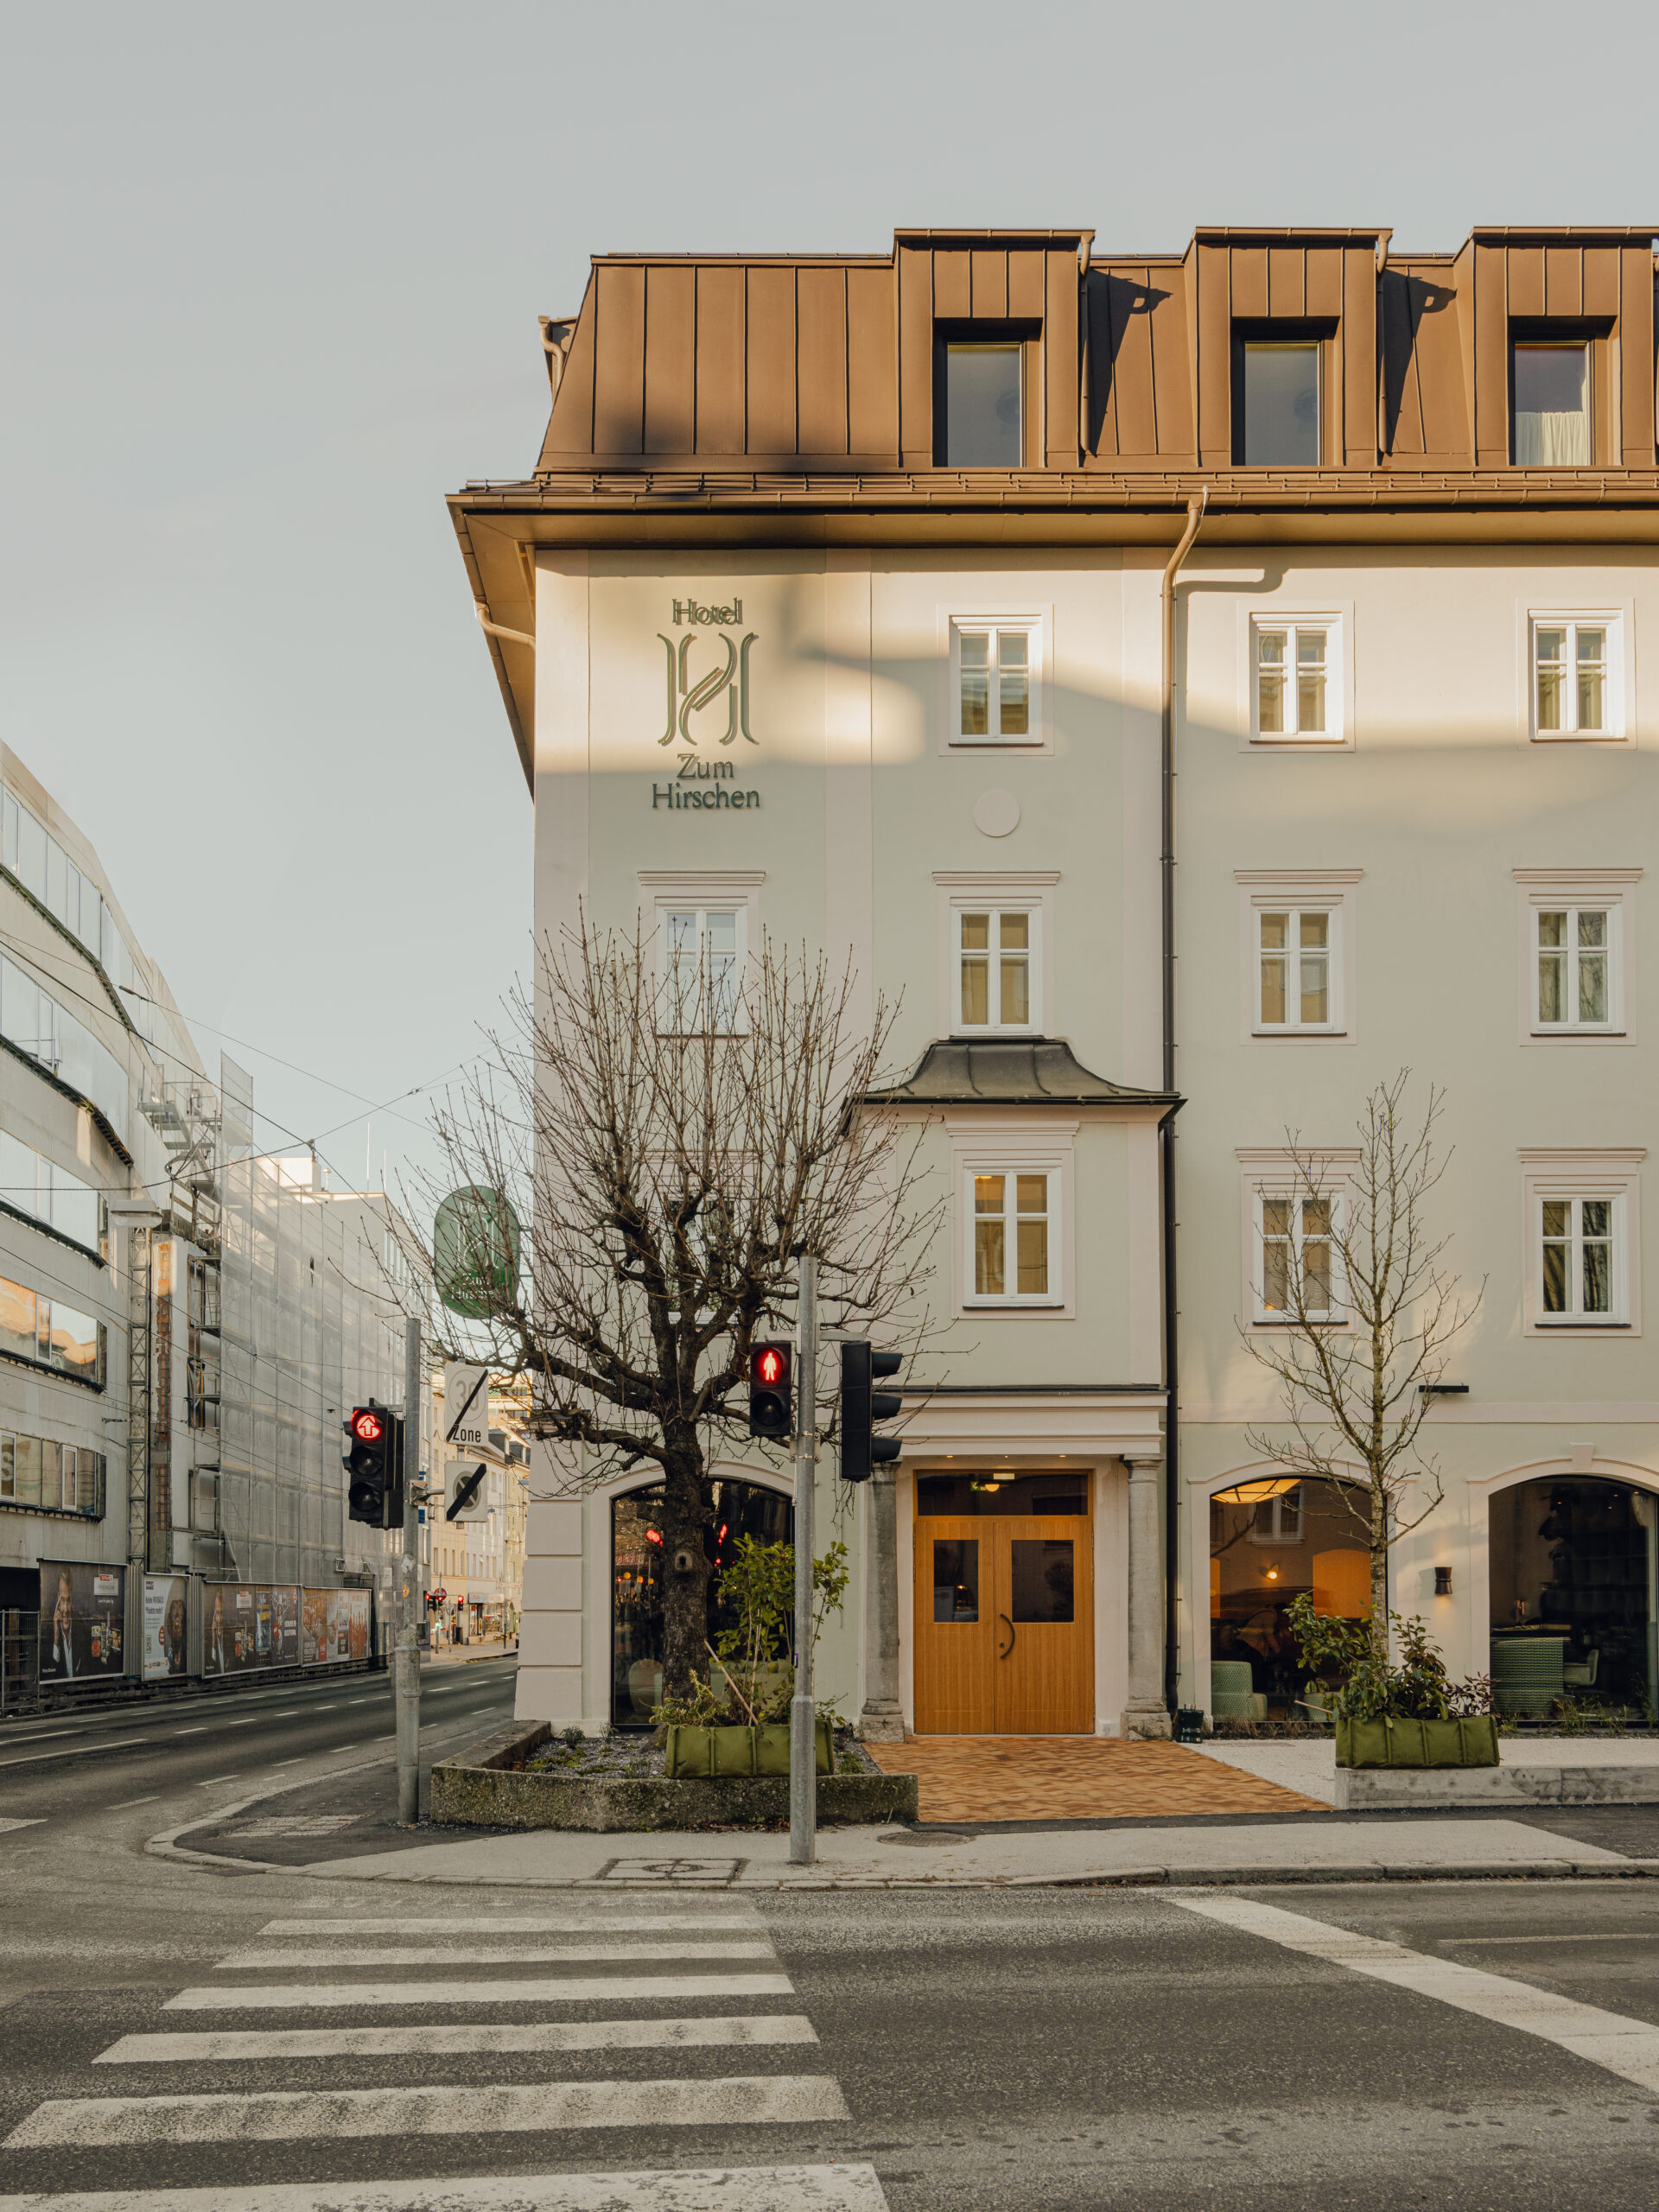 Außenansicht des Hotel zum Hirschen Salzburg. © PION Studio